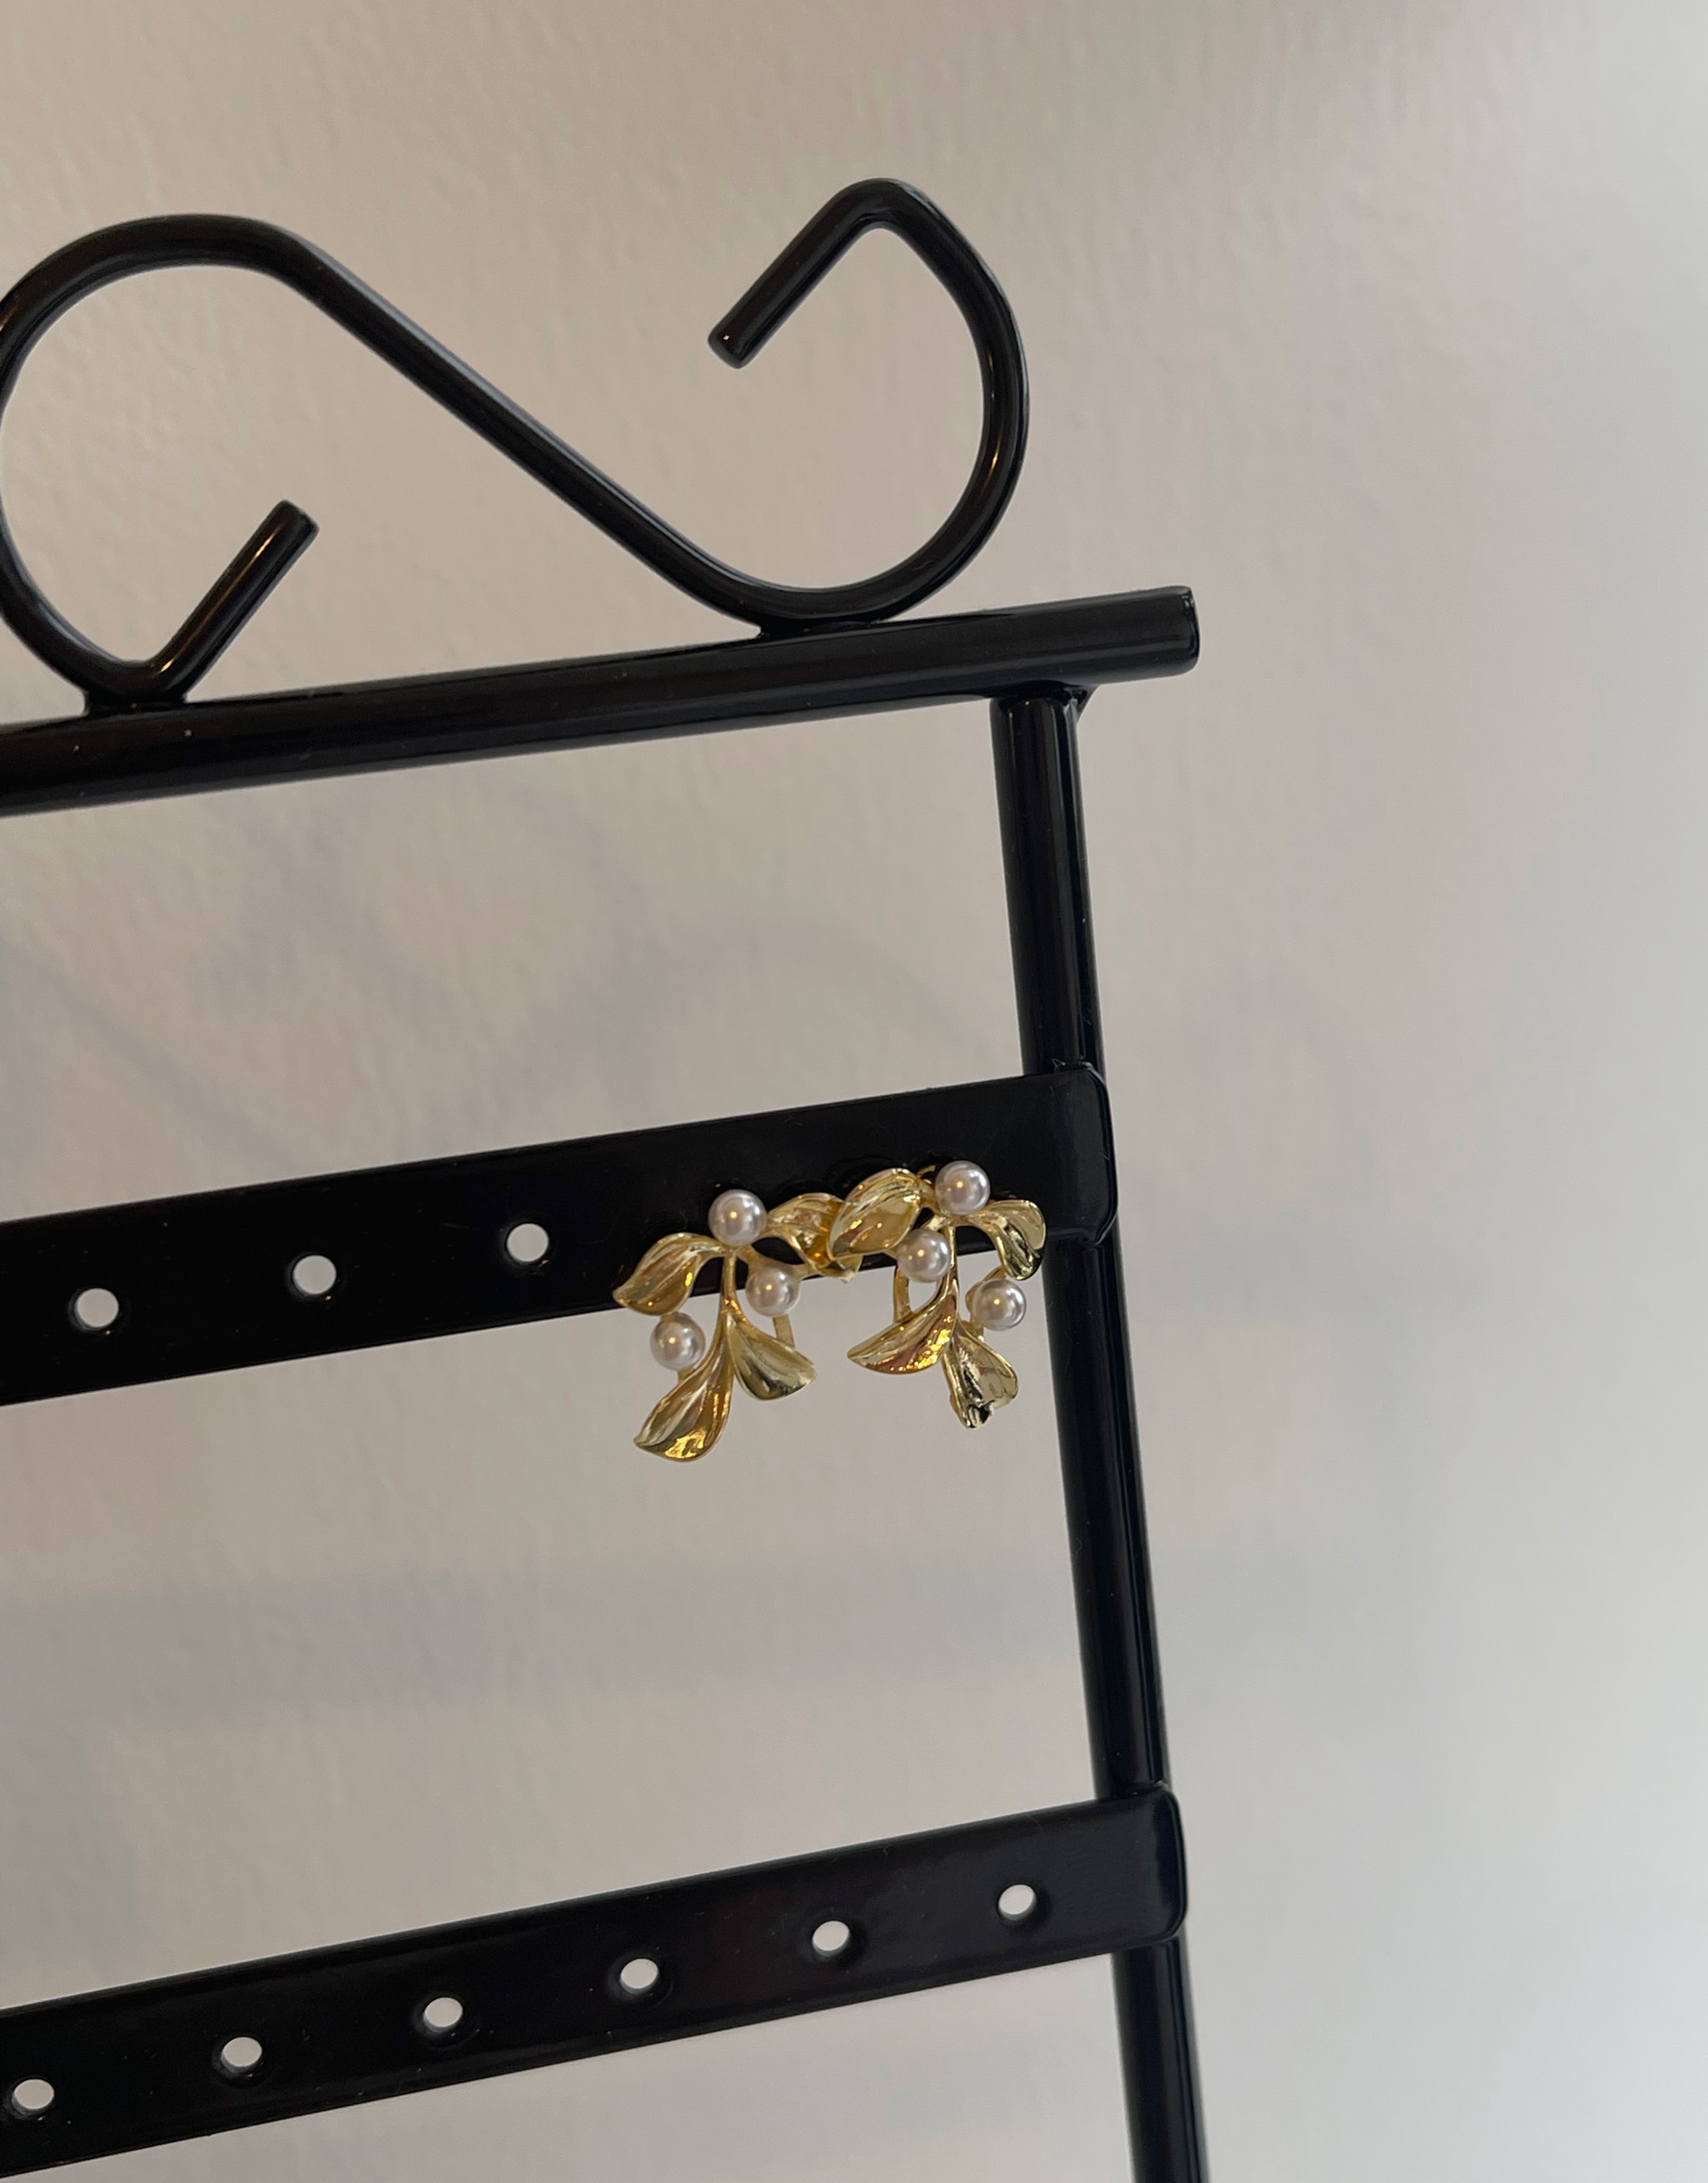 Zaray øreringe i guld med blomster motiv med små perler.  Unikke og elegante øreringe.  Øreringene kan bæres enkelt eller mixes and matches med mange af vores andre øreringe.  Materiale: S925 sterling sølv, guldbelagt, perler